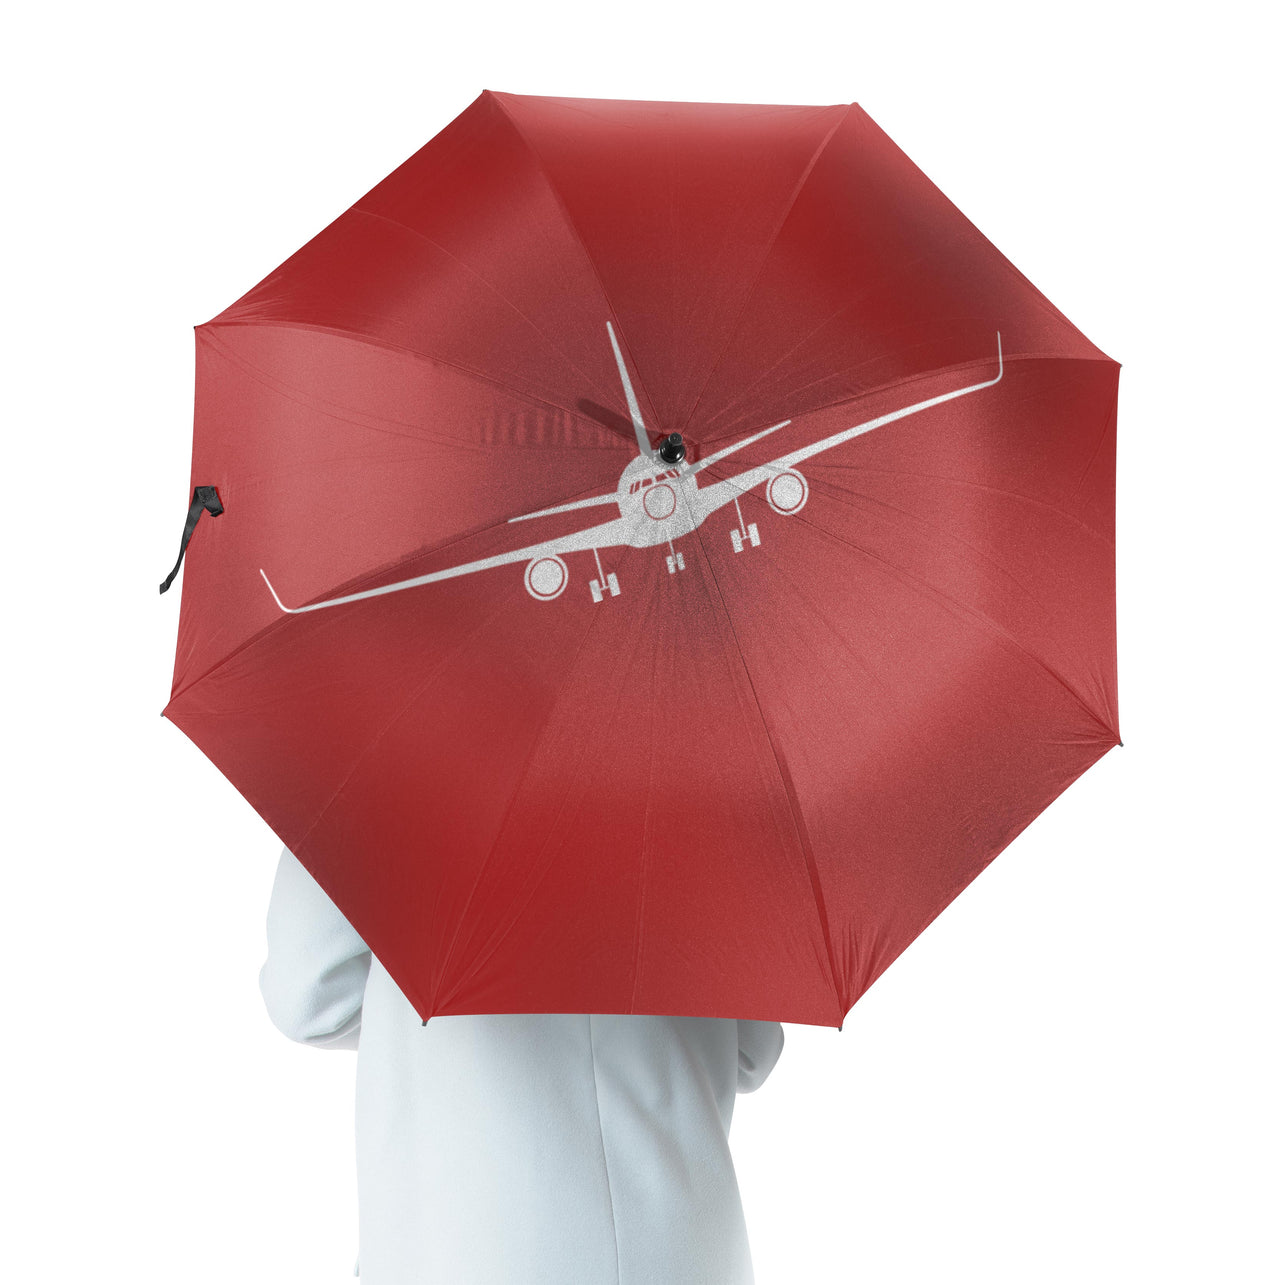 Copy of Boeing 757 Silhouette Designed Umbrella